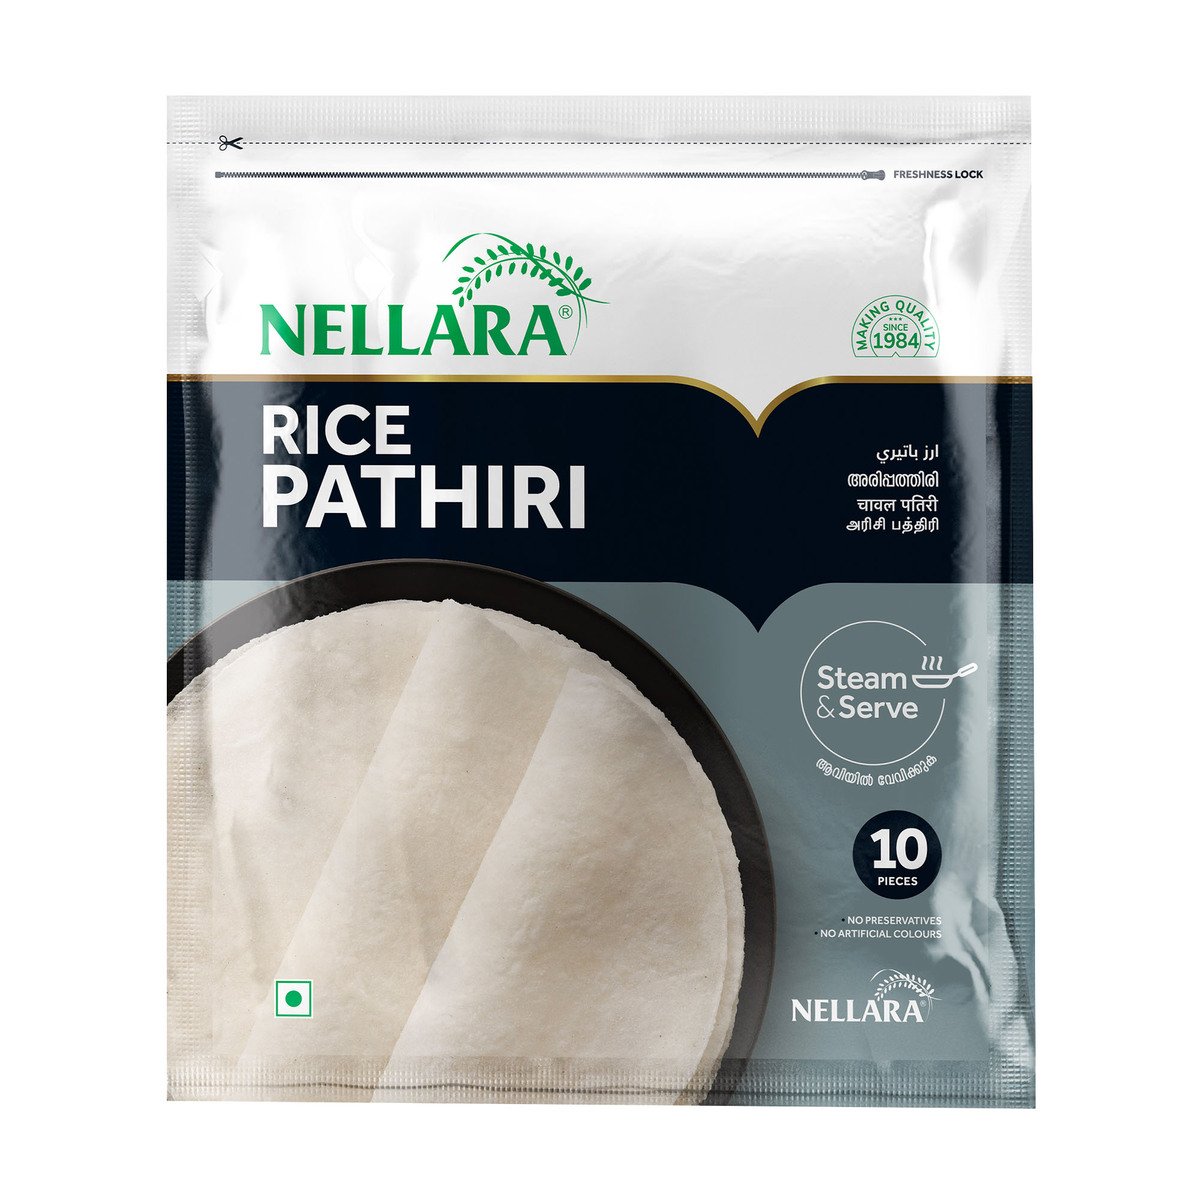 Nellara Rice Pathiri 10 pcs